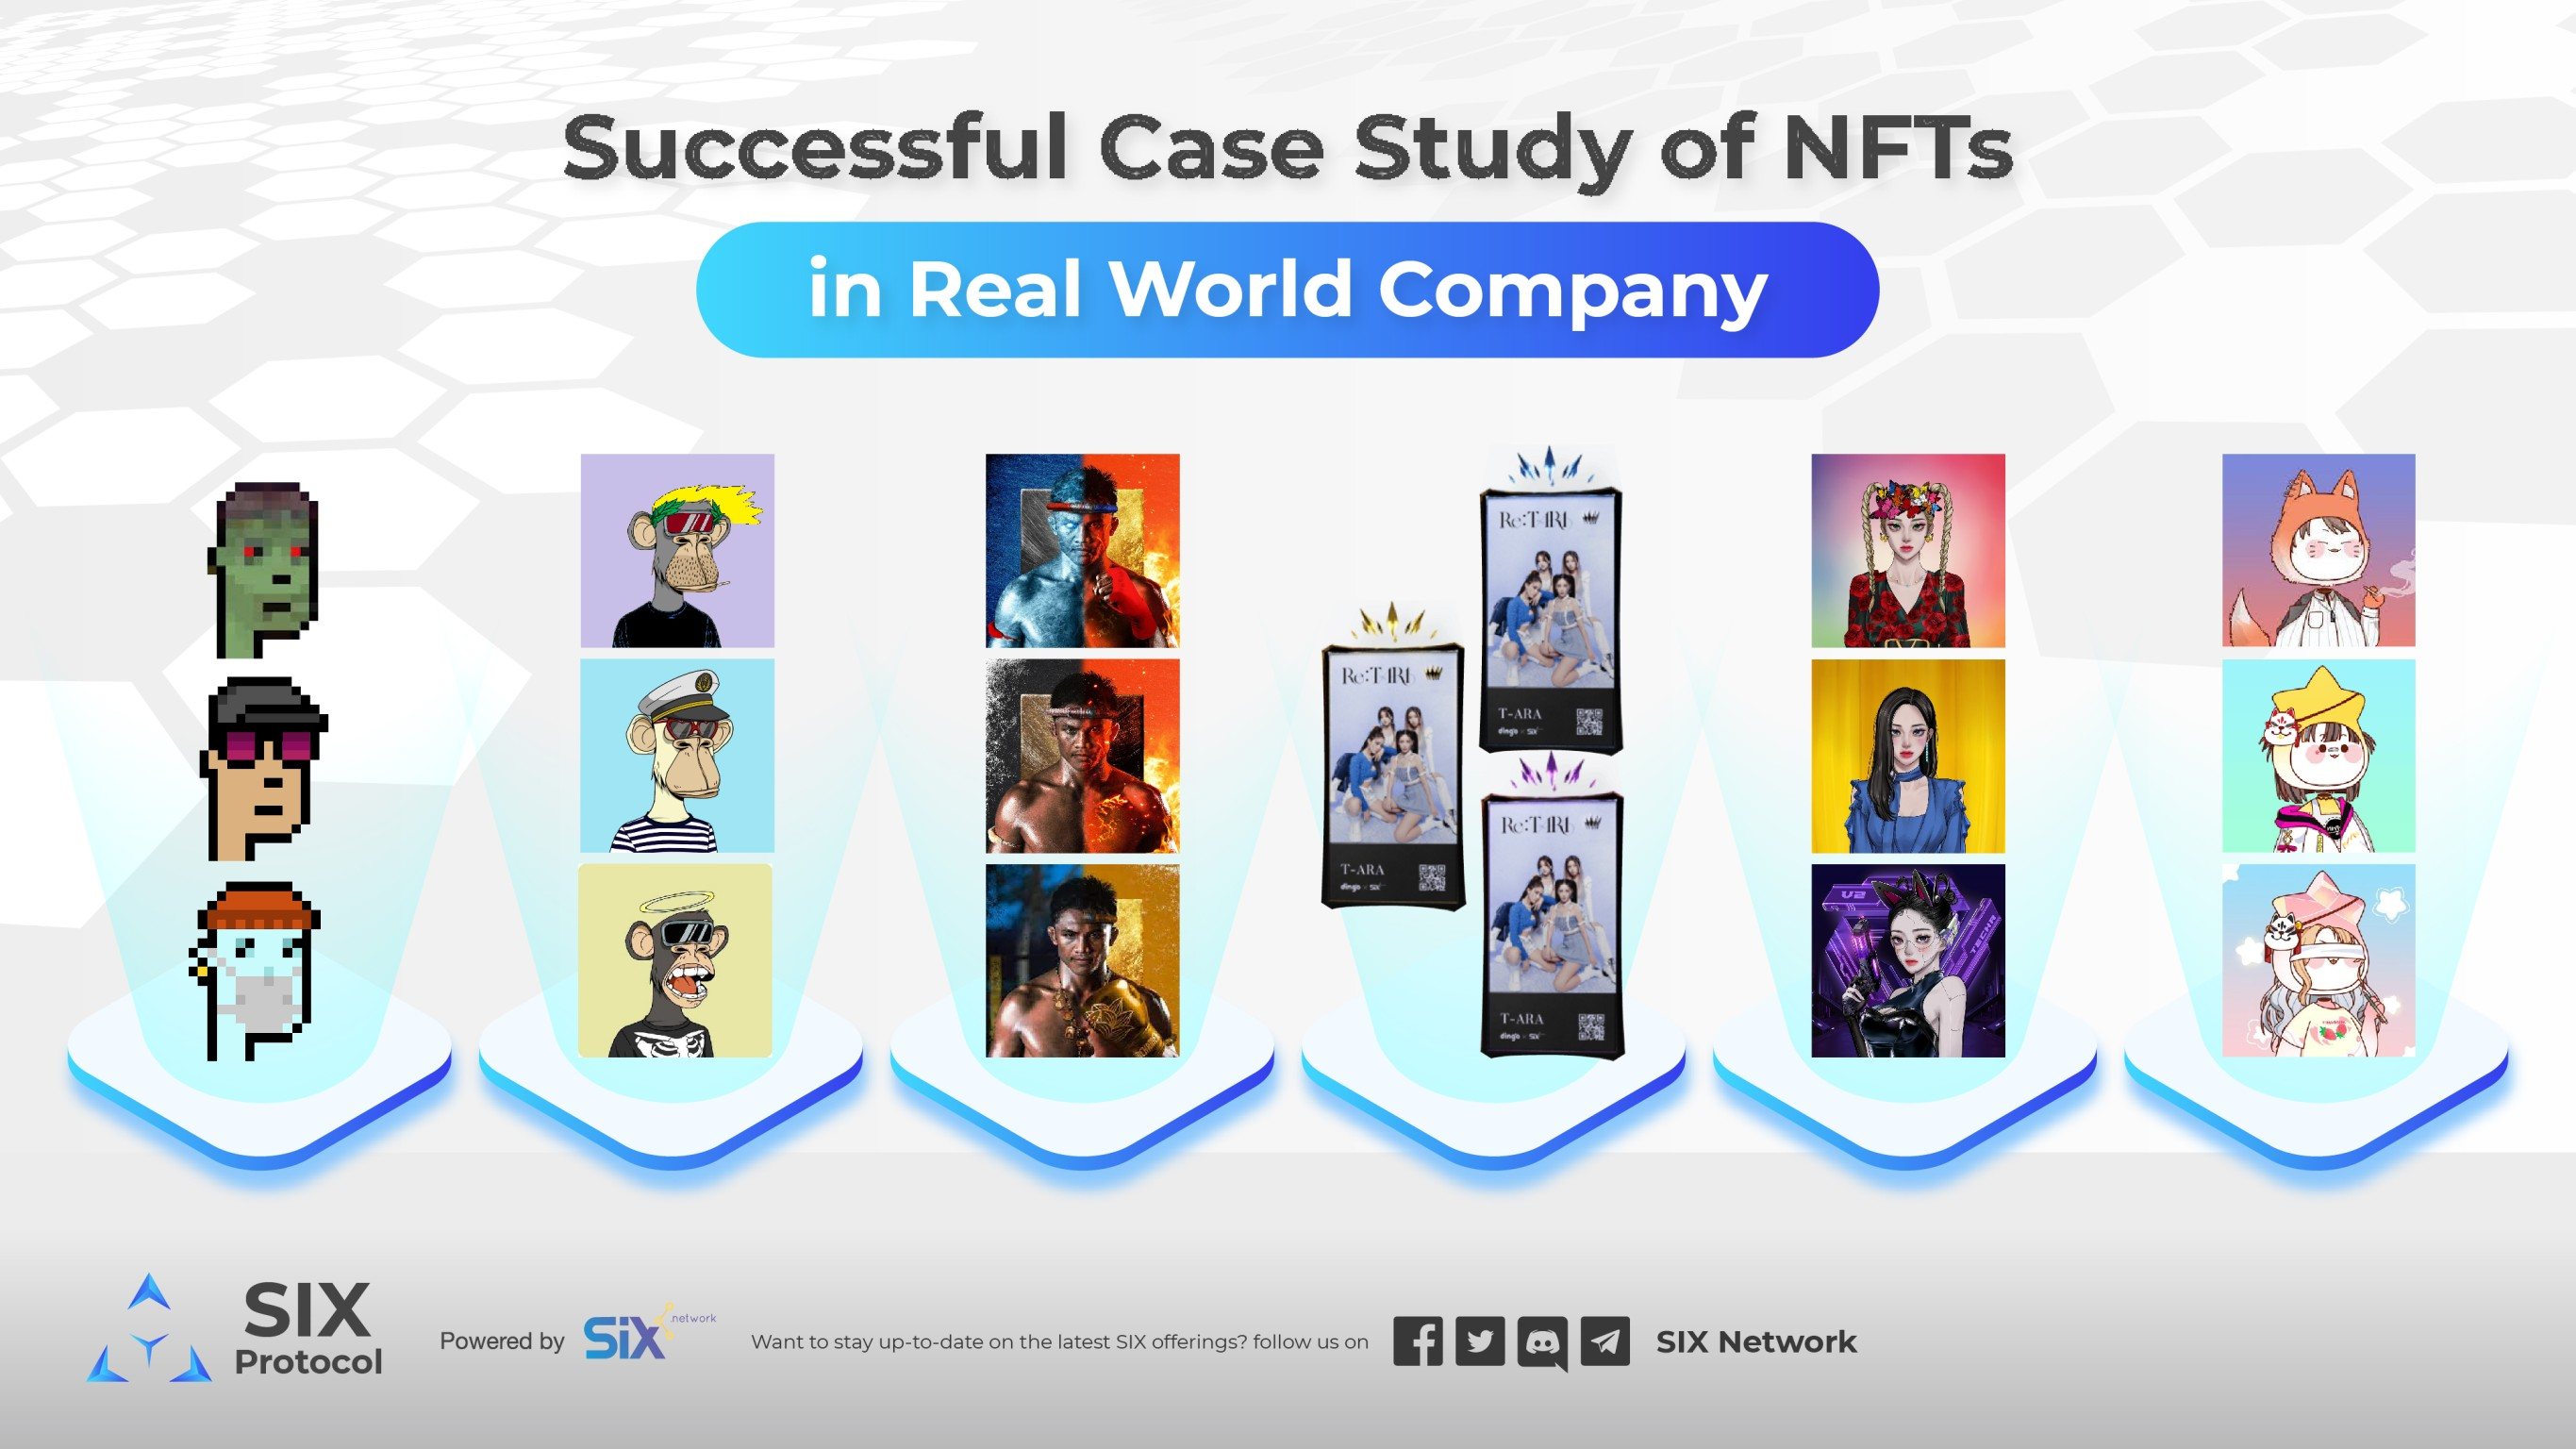 Case Study น่าสนใจของ NFTs และตัวอย่างบริษัทที่ใช้ NFTs เพื่อธุรกิจ